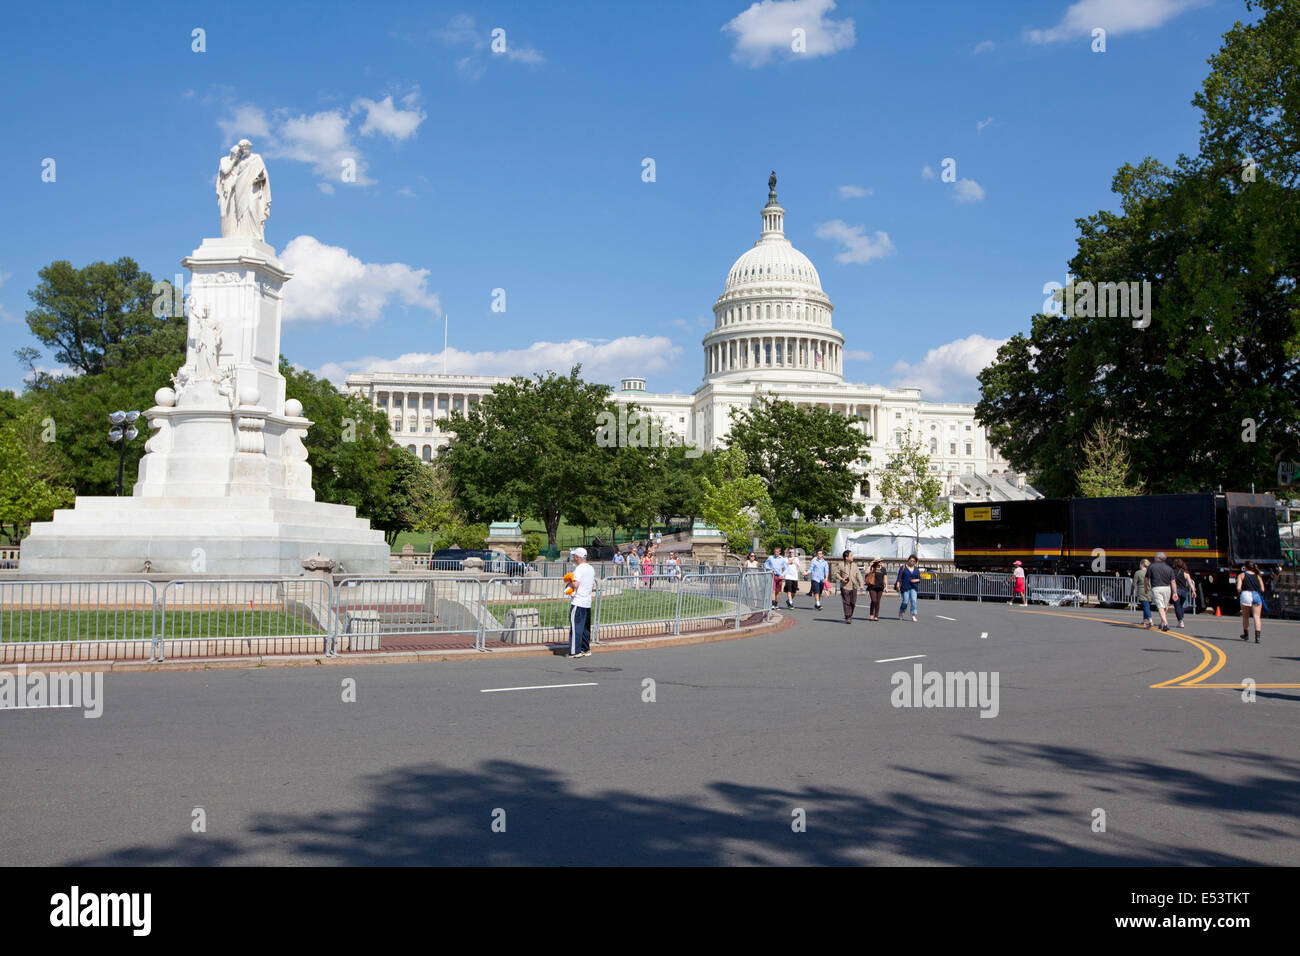 WASHINGTON D.C. - 23. Mai 2014: Touristen Sehenswürdigkeiten rund um Capitol Hill in Washington D.C. am Memorial Day Wochenende. Stockfoto